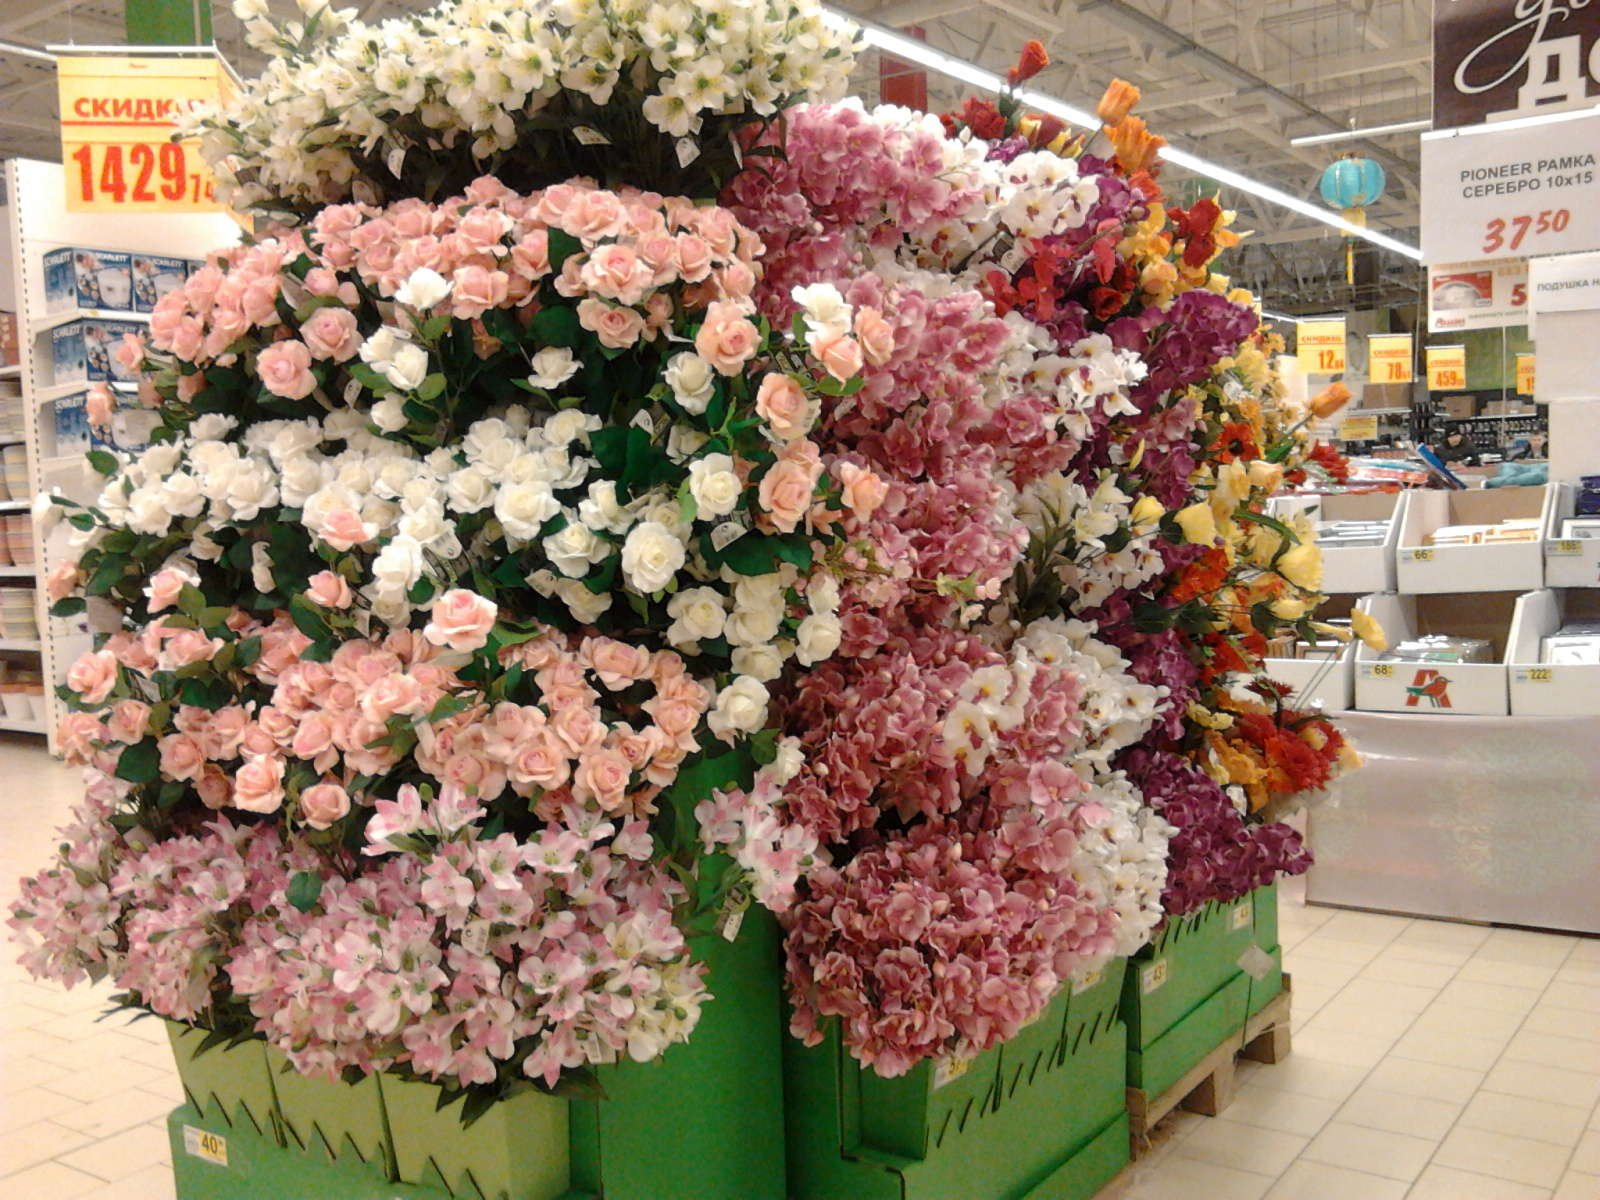 Живые цветы интернет магазин. Розы в Леруа Мерлен. Герань Леруа Мерлен. Цветочный магазин в Ашане. Саженцы цветов в Ашане.